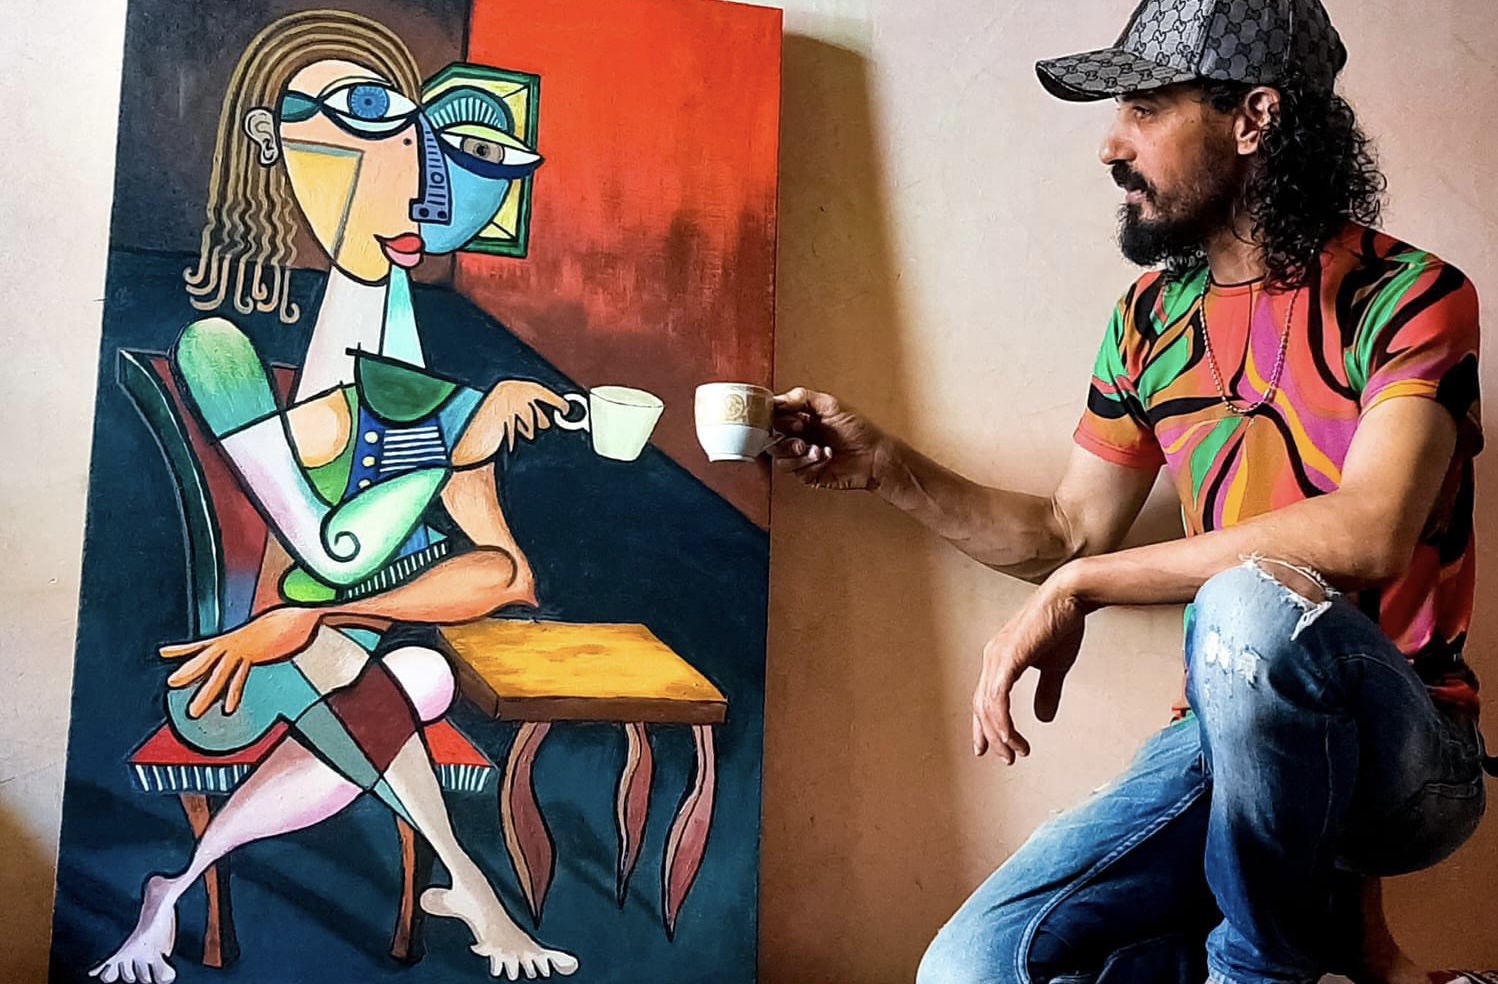 غدا في الدار البيضاء . الفنان التشكيلي حسن عين الحياة يعرض لوحاته